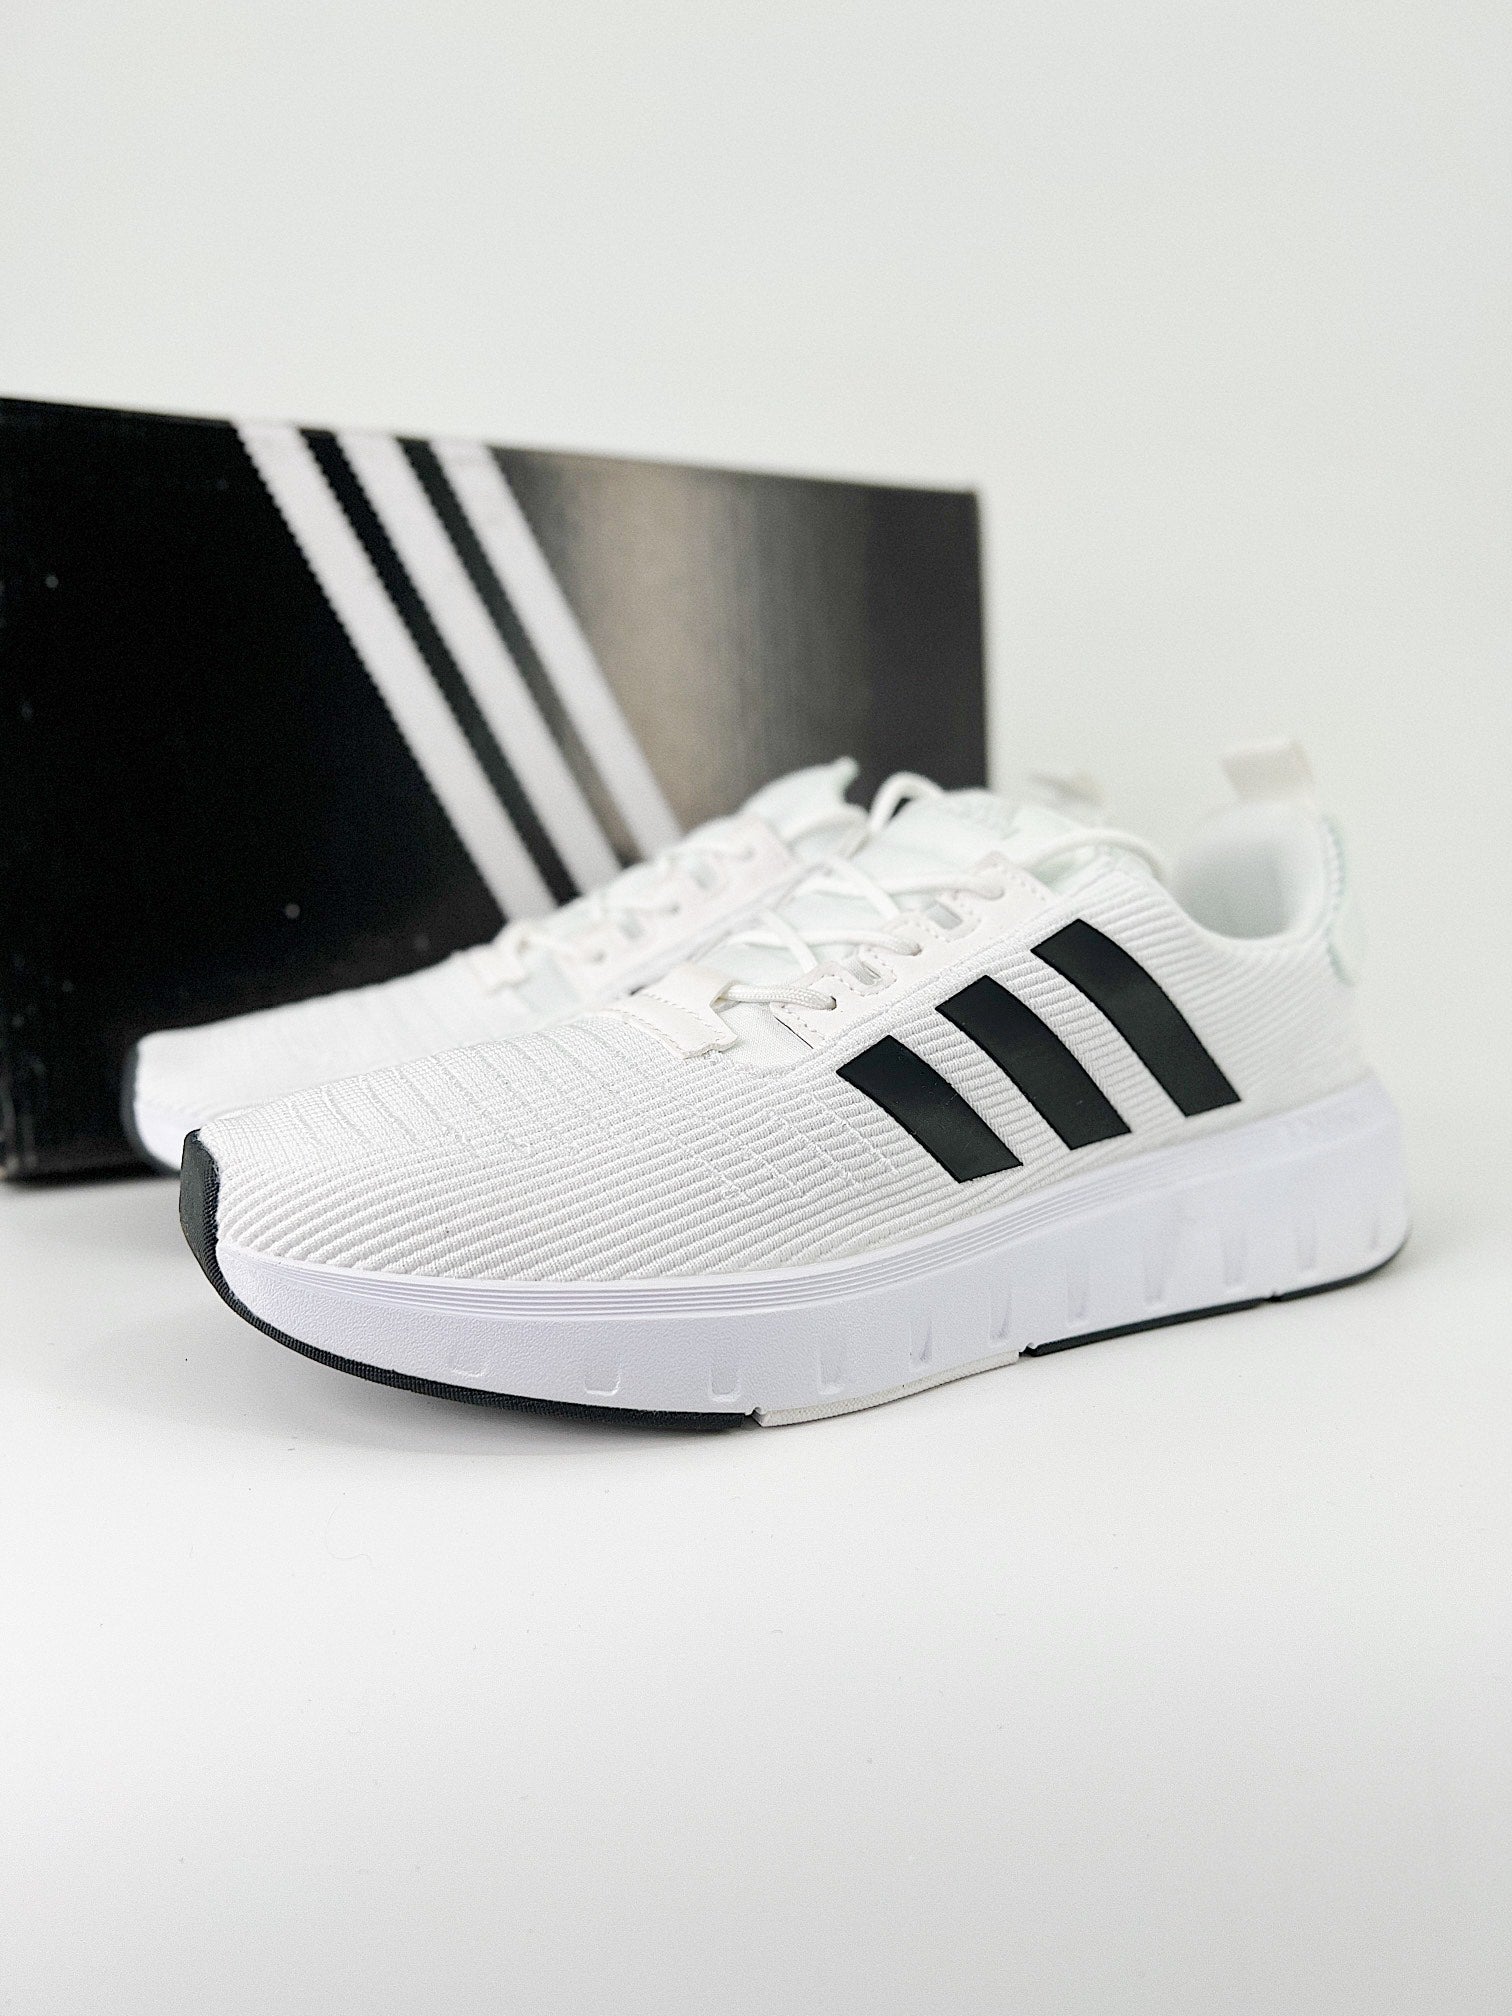 Adidas RUN swift X black/white